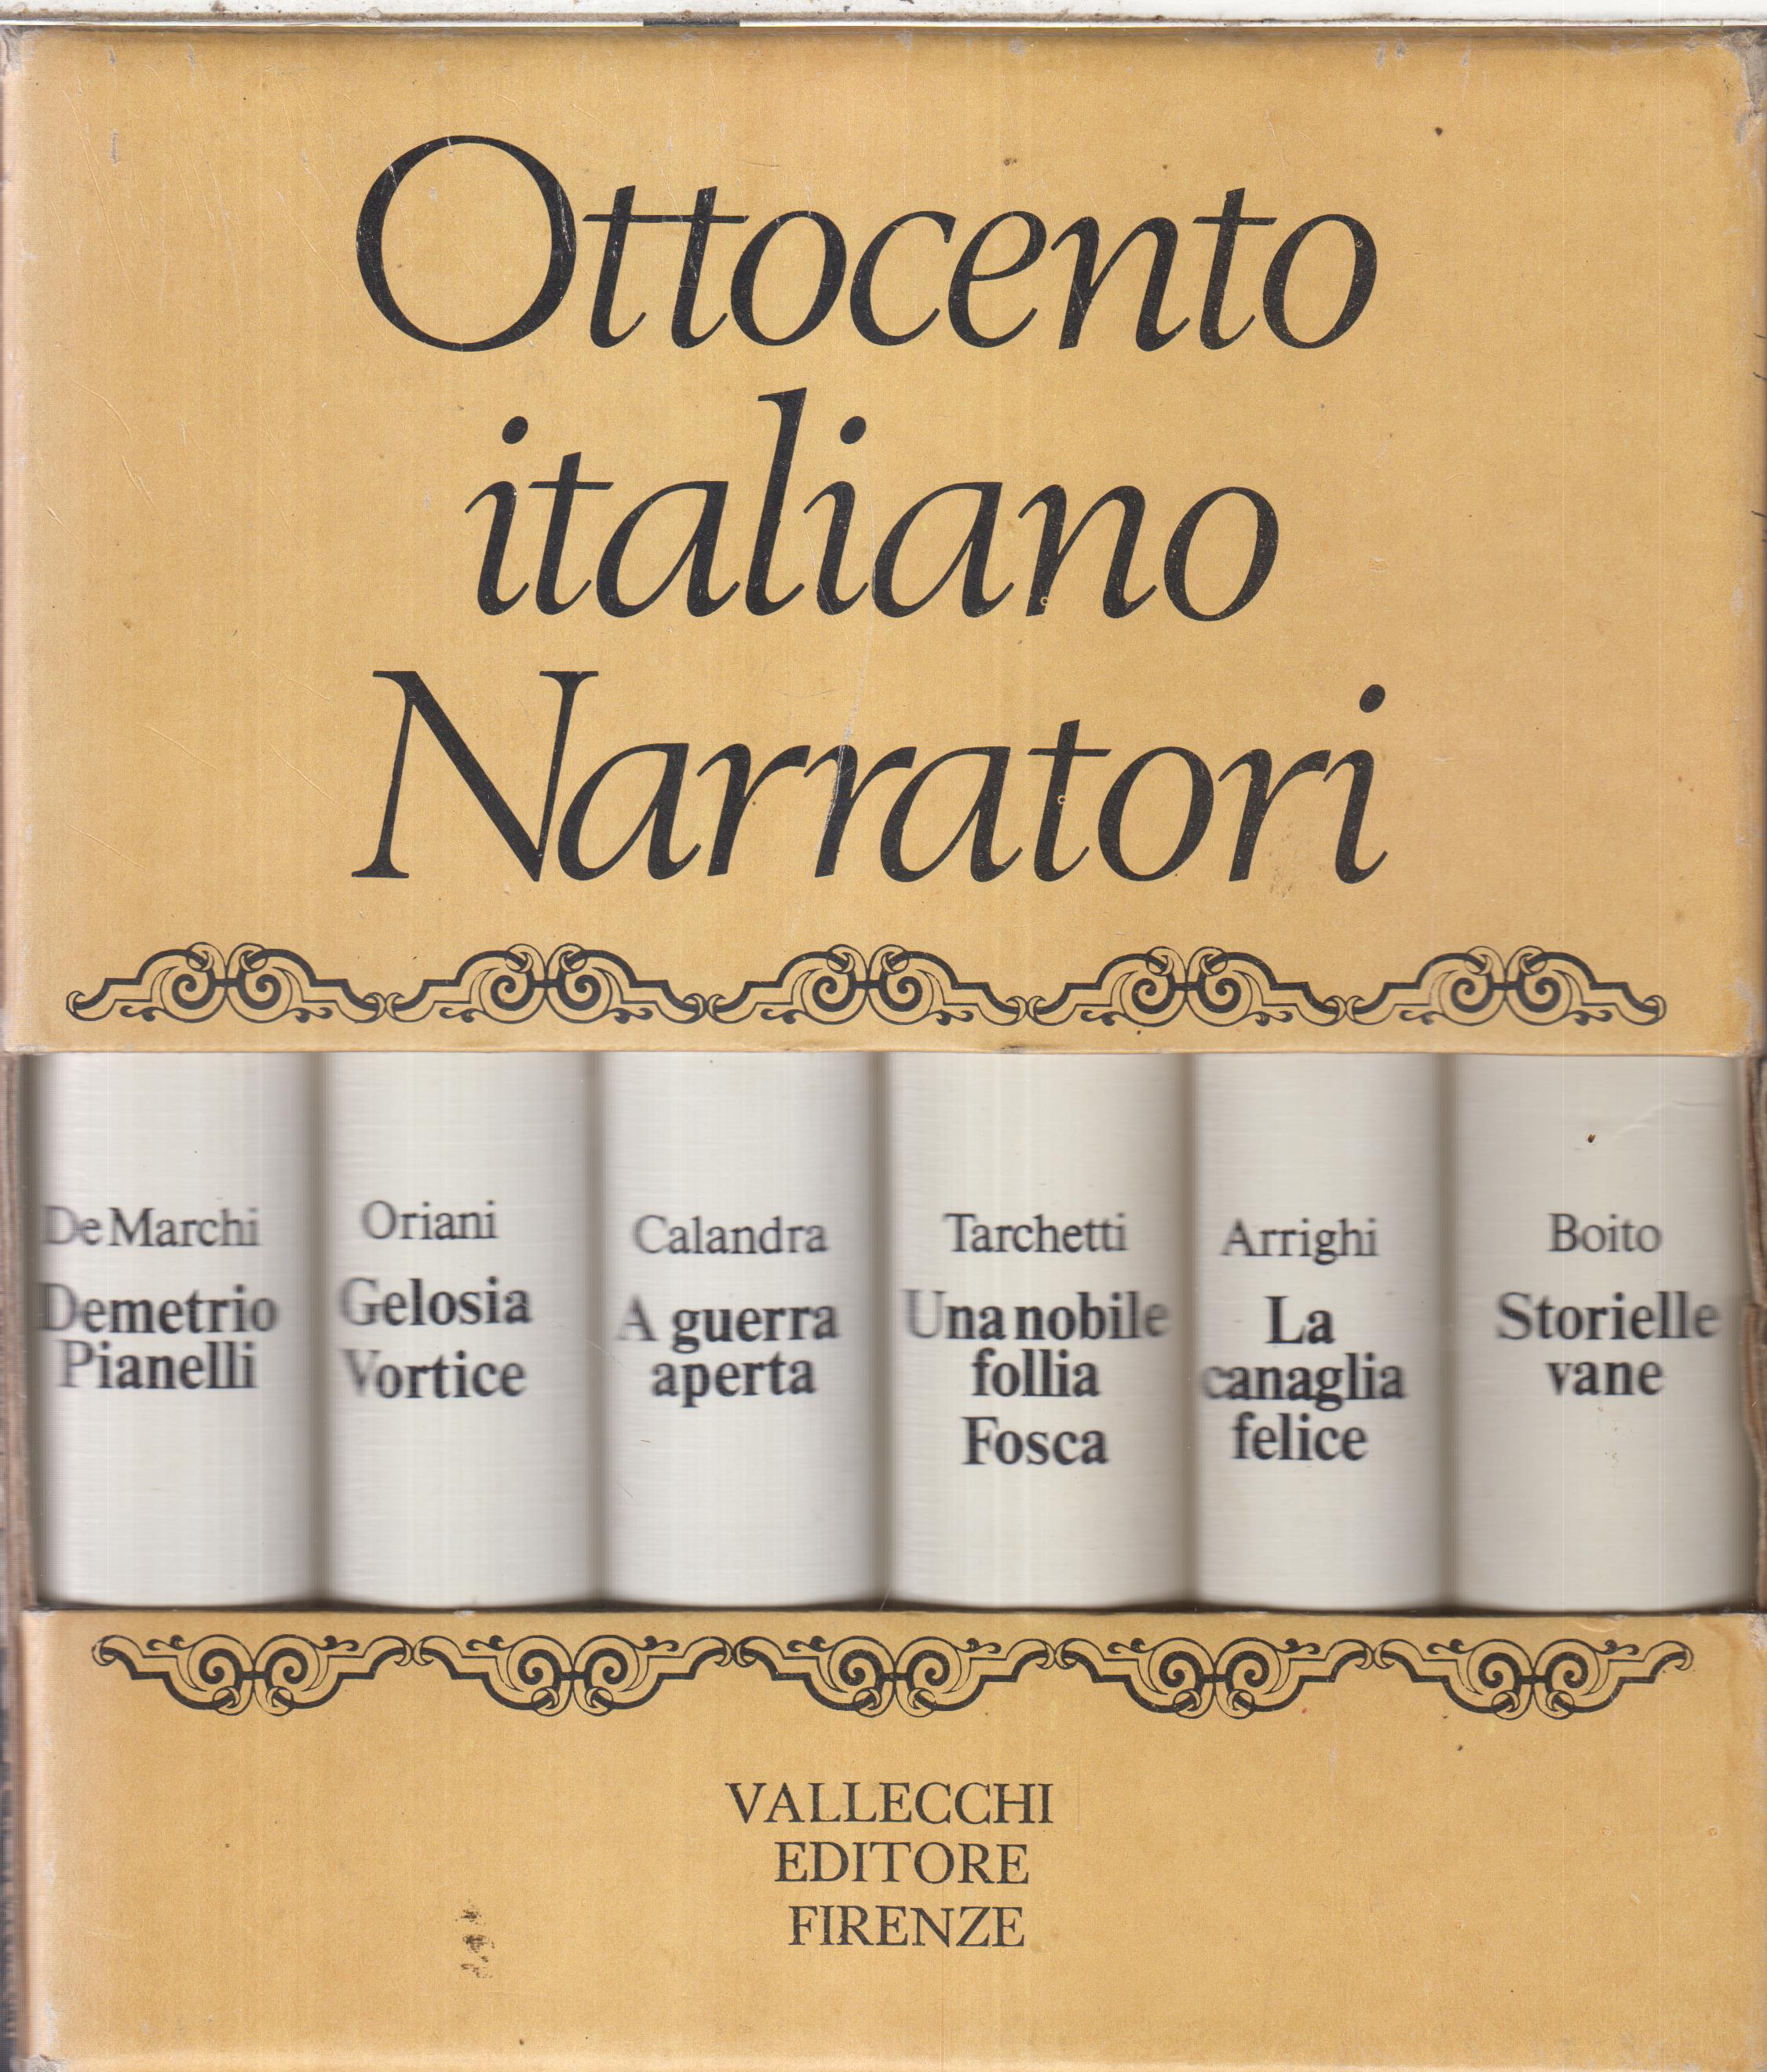 Ottocento italiano Narratori, VALLECCHI EDITORE FIRENZE, 1970